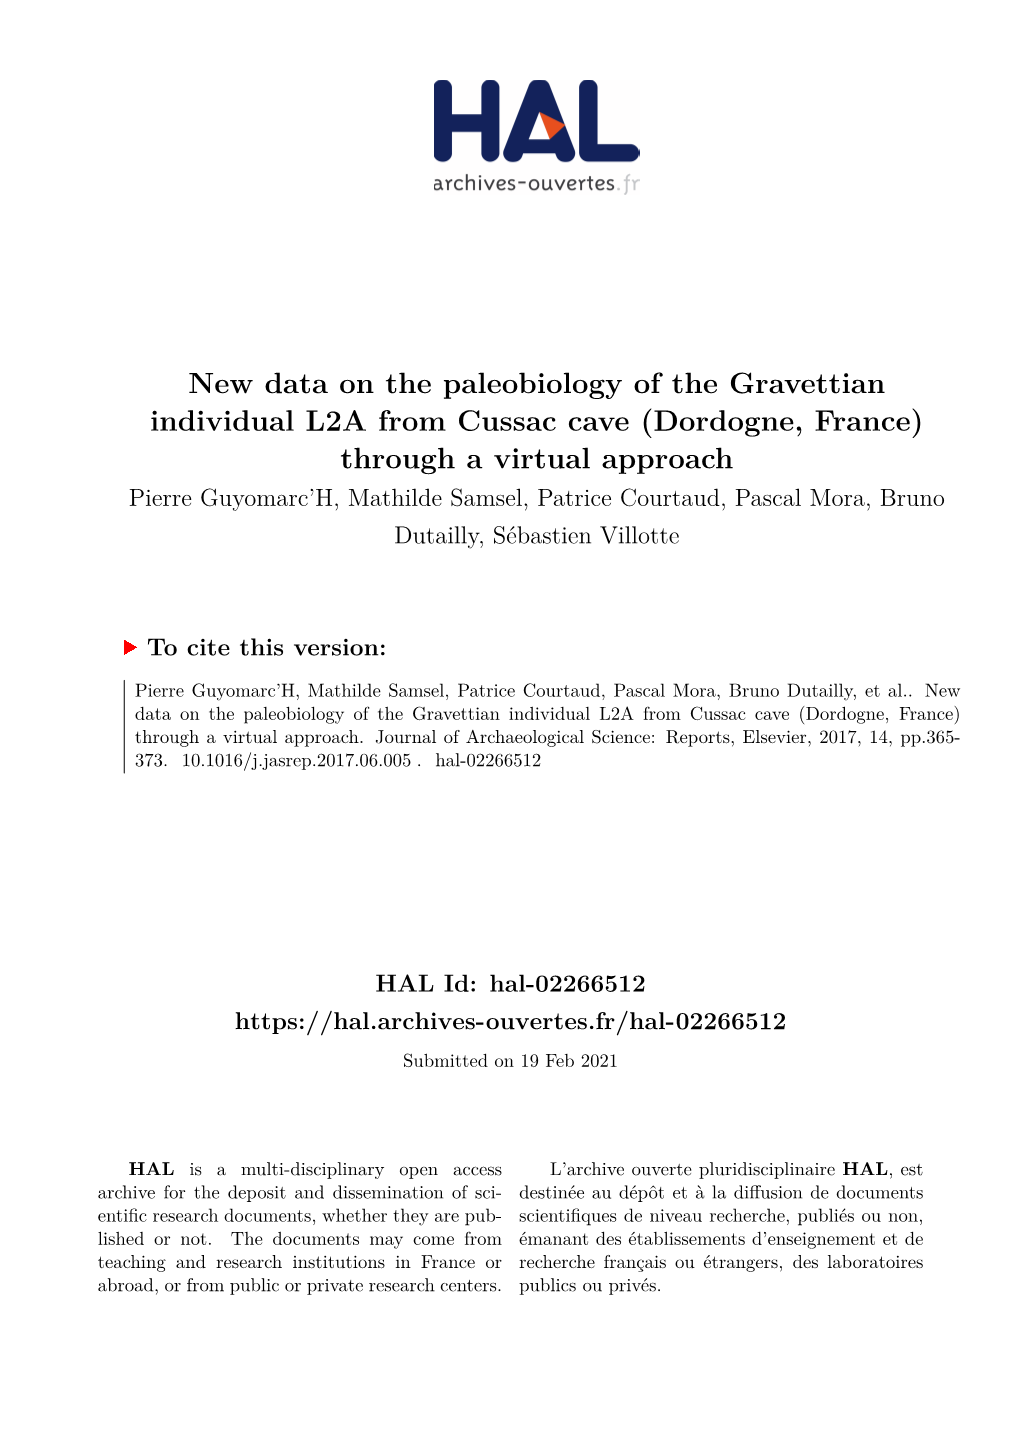 New Data on the Paleobiology of the Gravettian